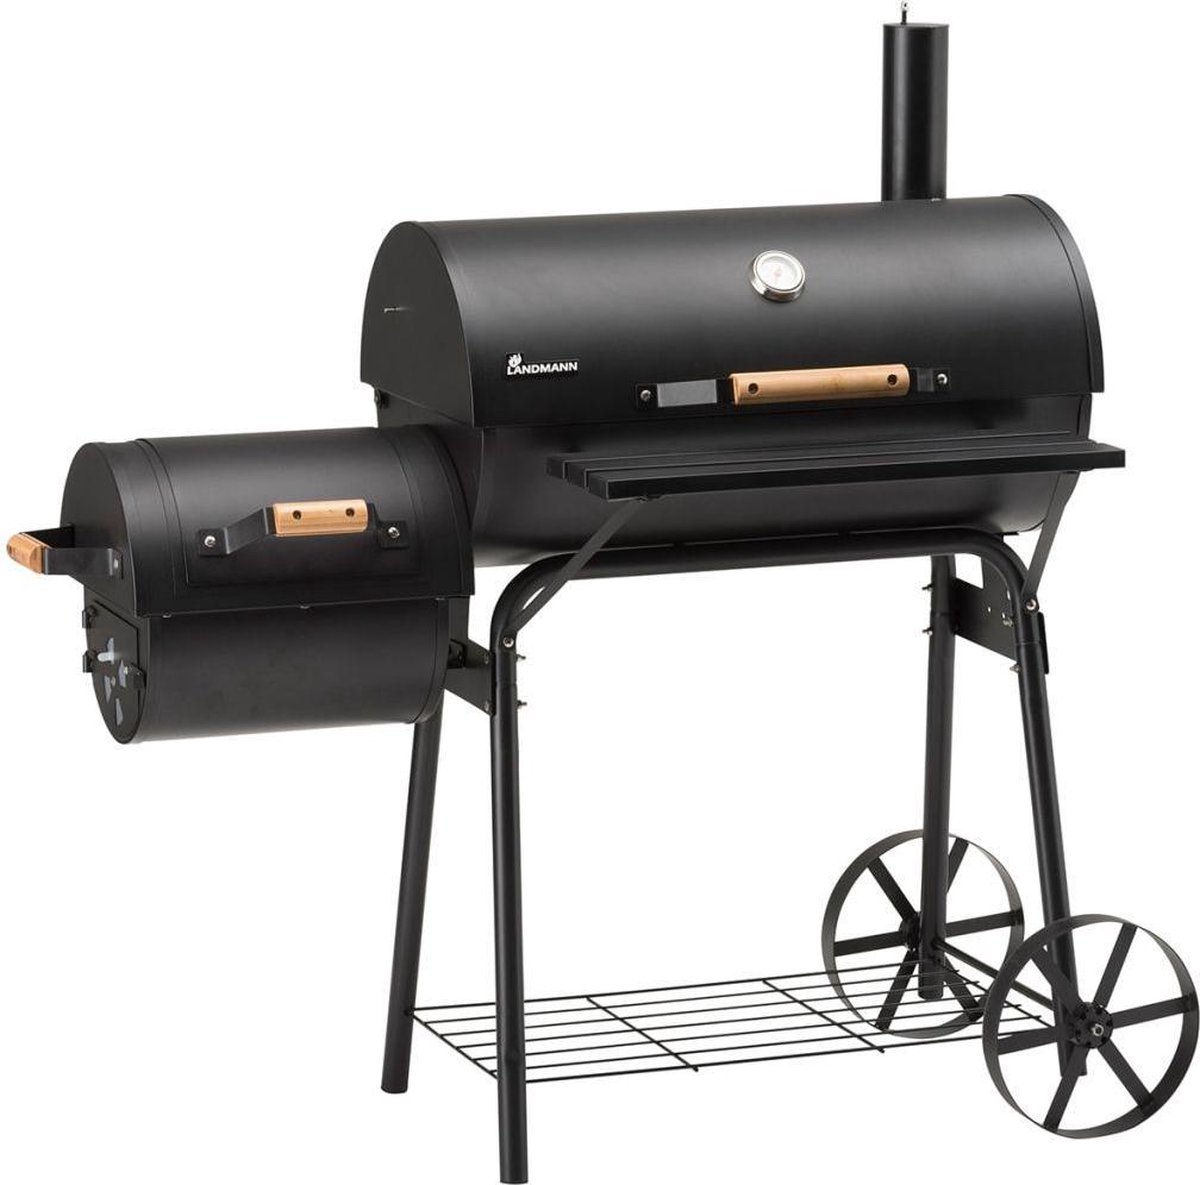 Landmann Grillchef Smoker Tennessee 200 Houtskoolbarbecue - 66x37 cm - Zwart - Grillchef